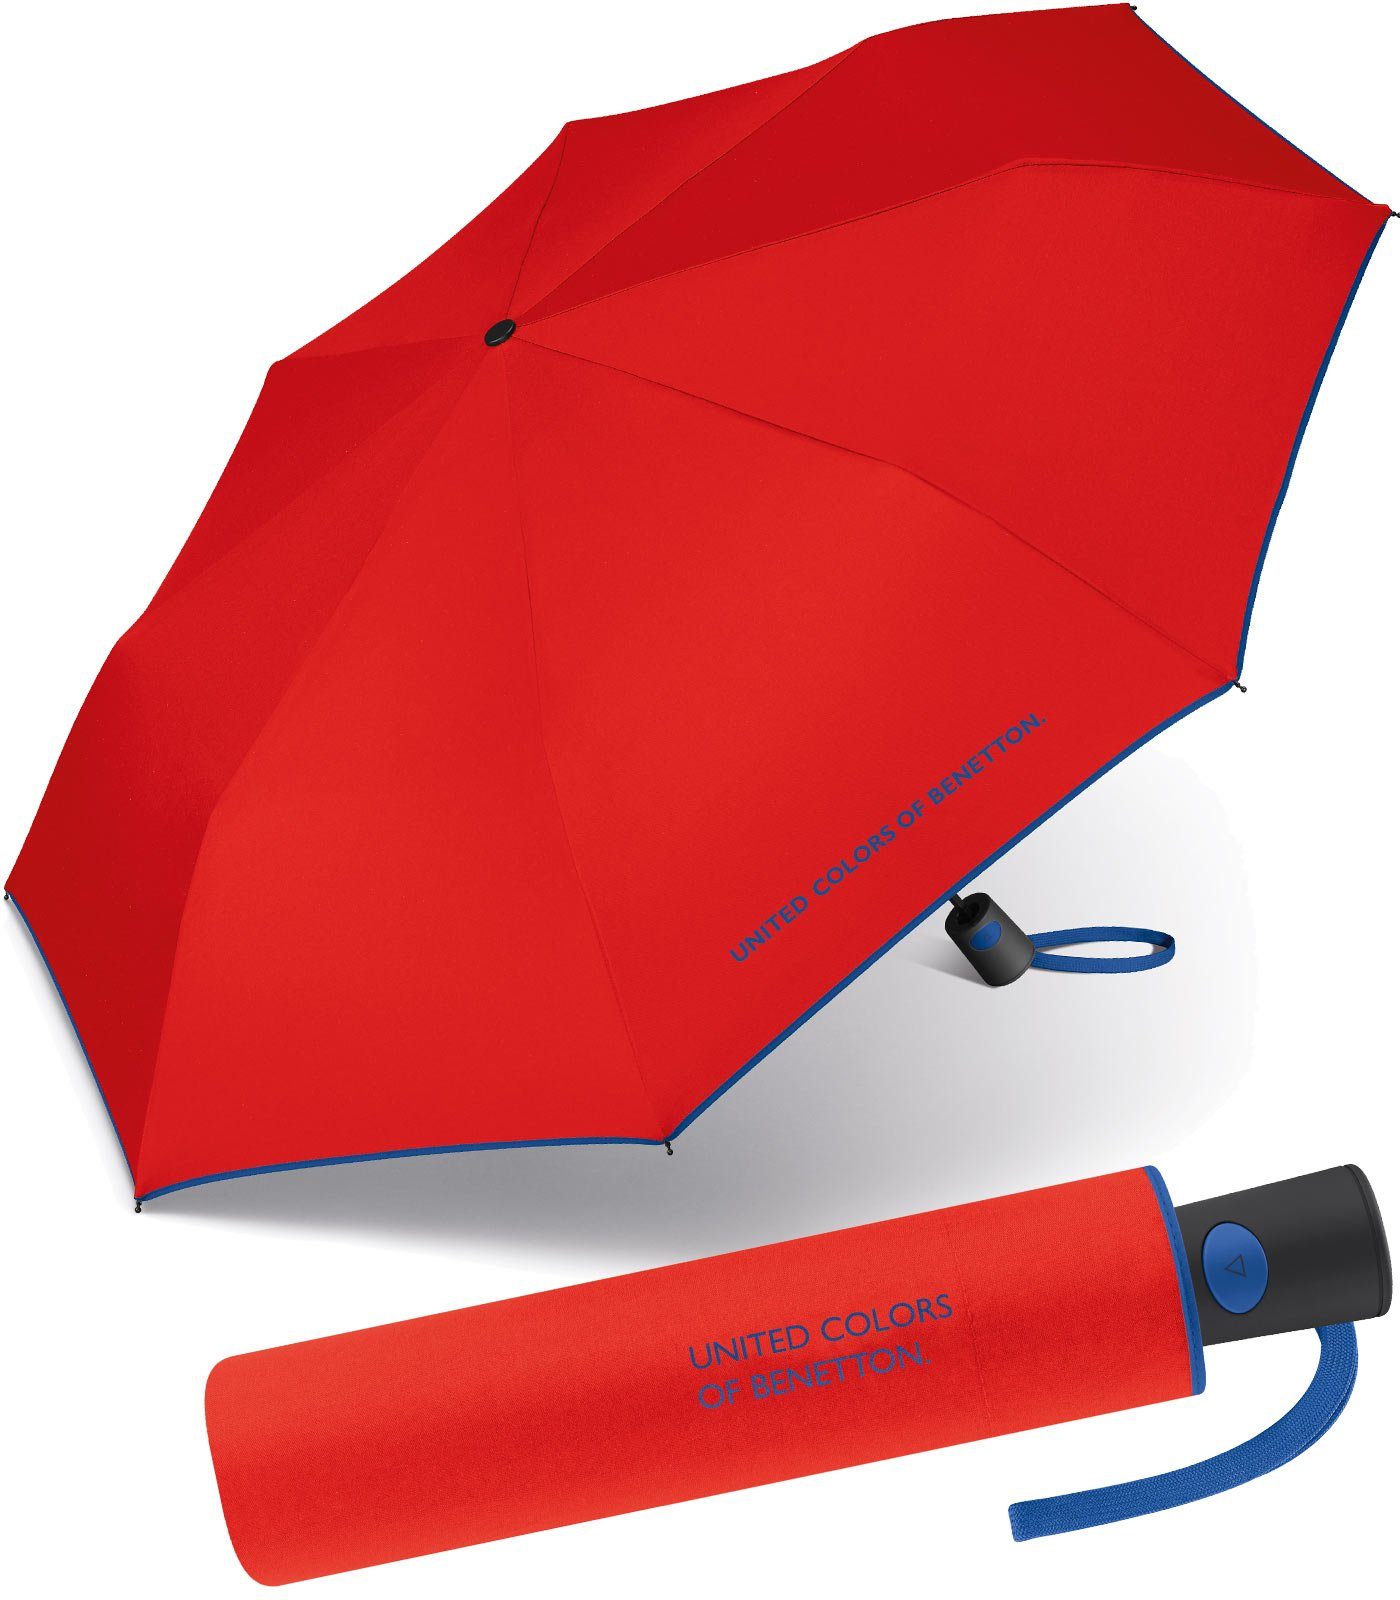 United Colors of Benetton Taschenregenschirm schöner Damen-Regenschirm mit Auf-Automatik, mit Kontrastfarben am Schirmrand - rot-blau